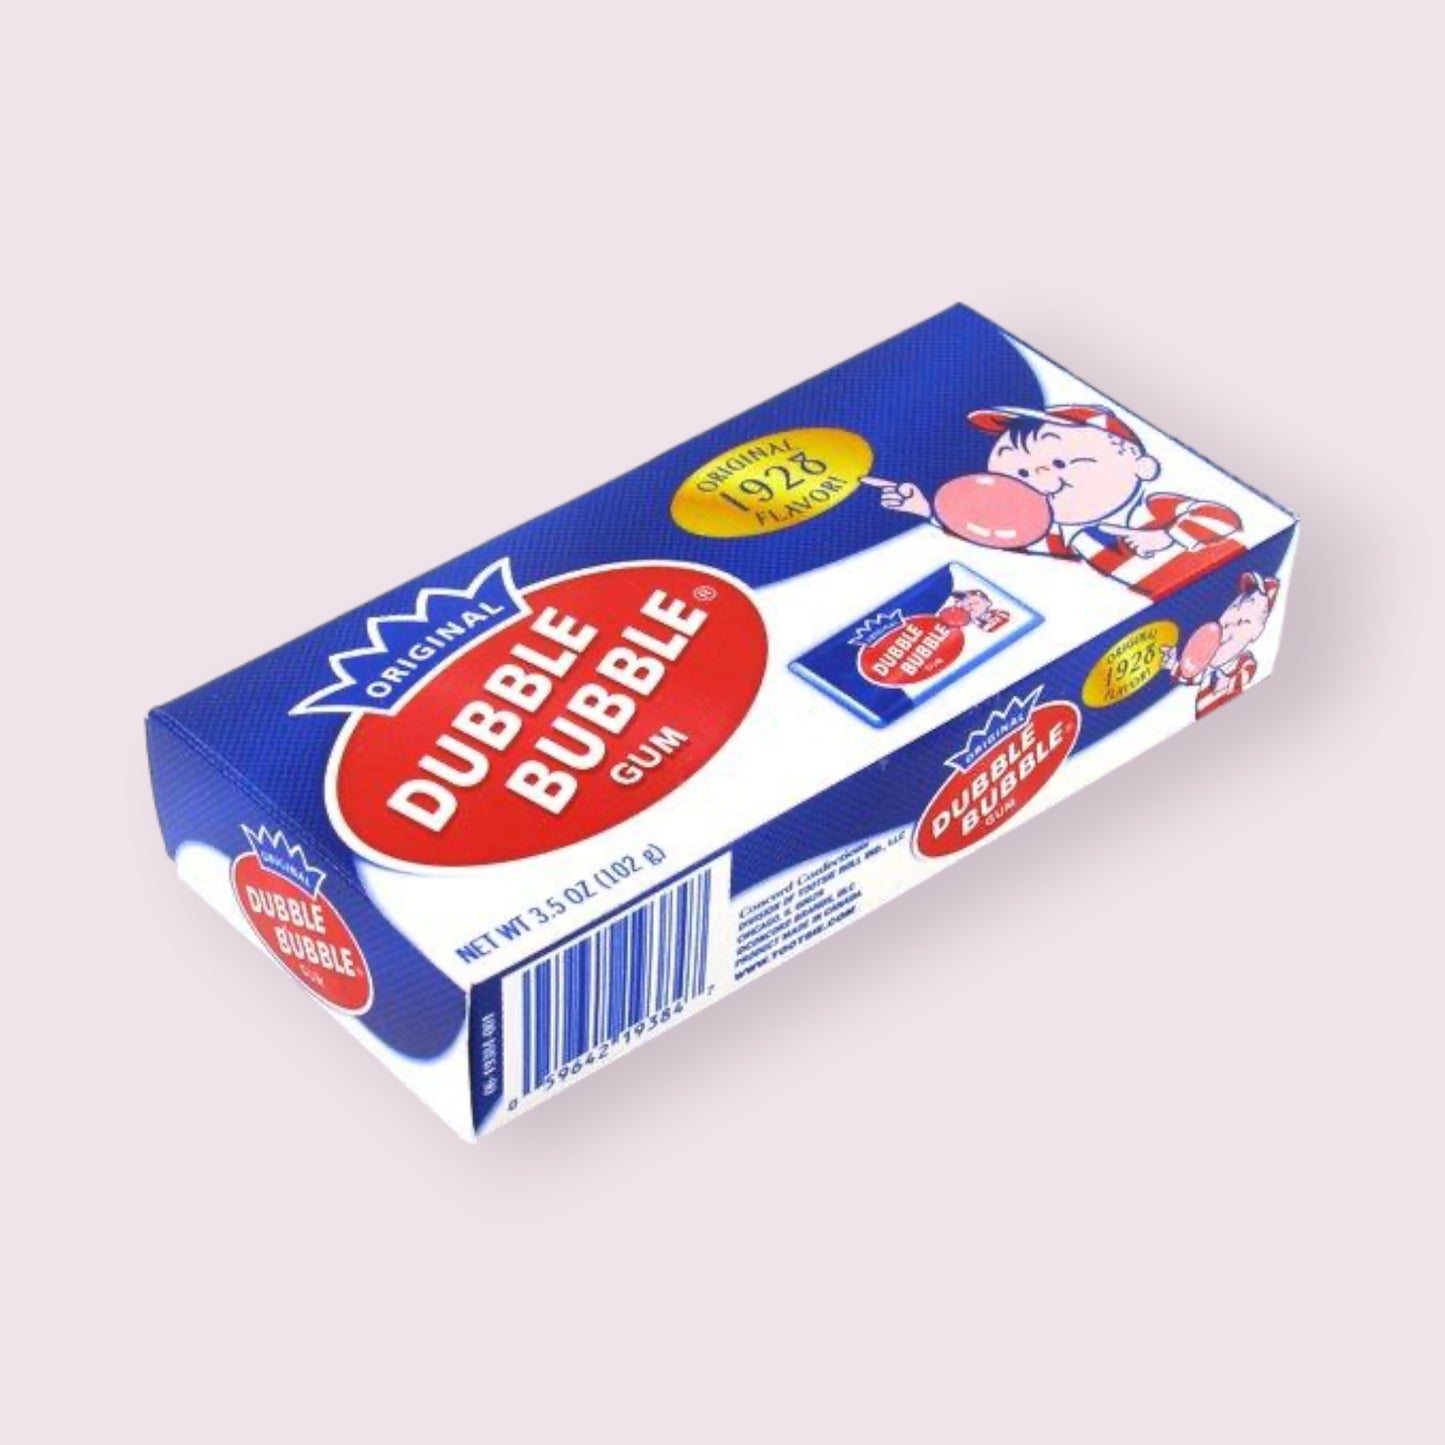 Dubble Bubble Gum Box Essentials Pixie Candy Shop   